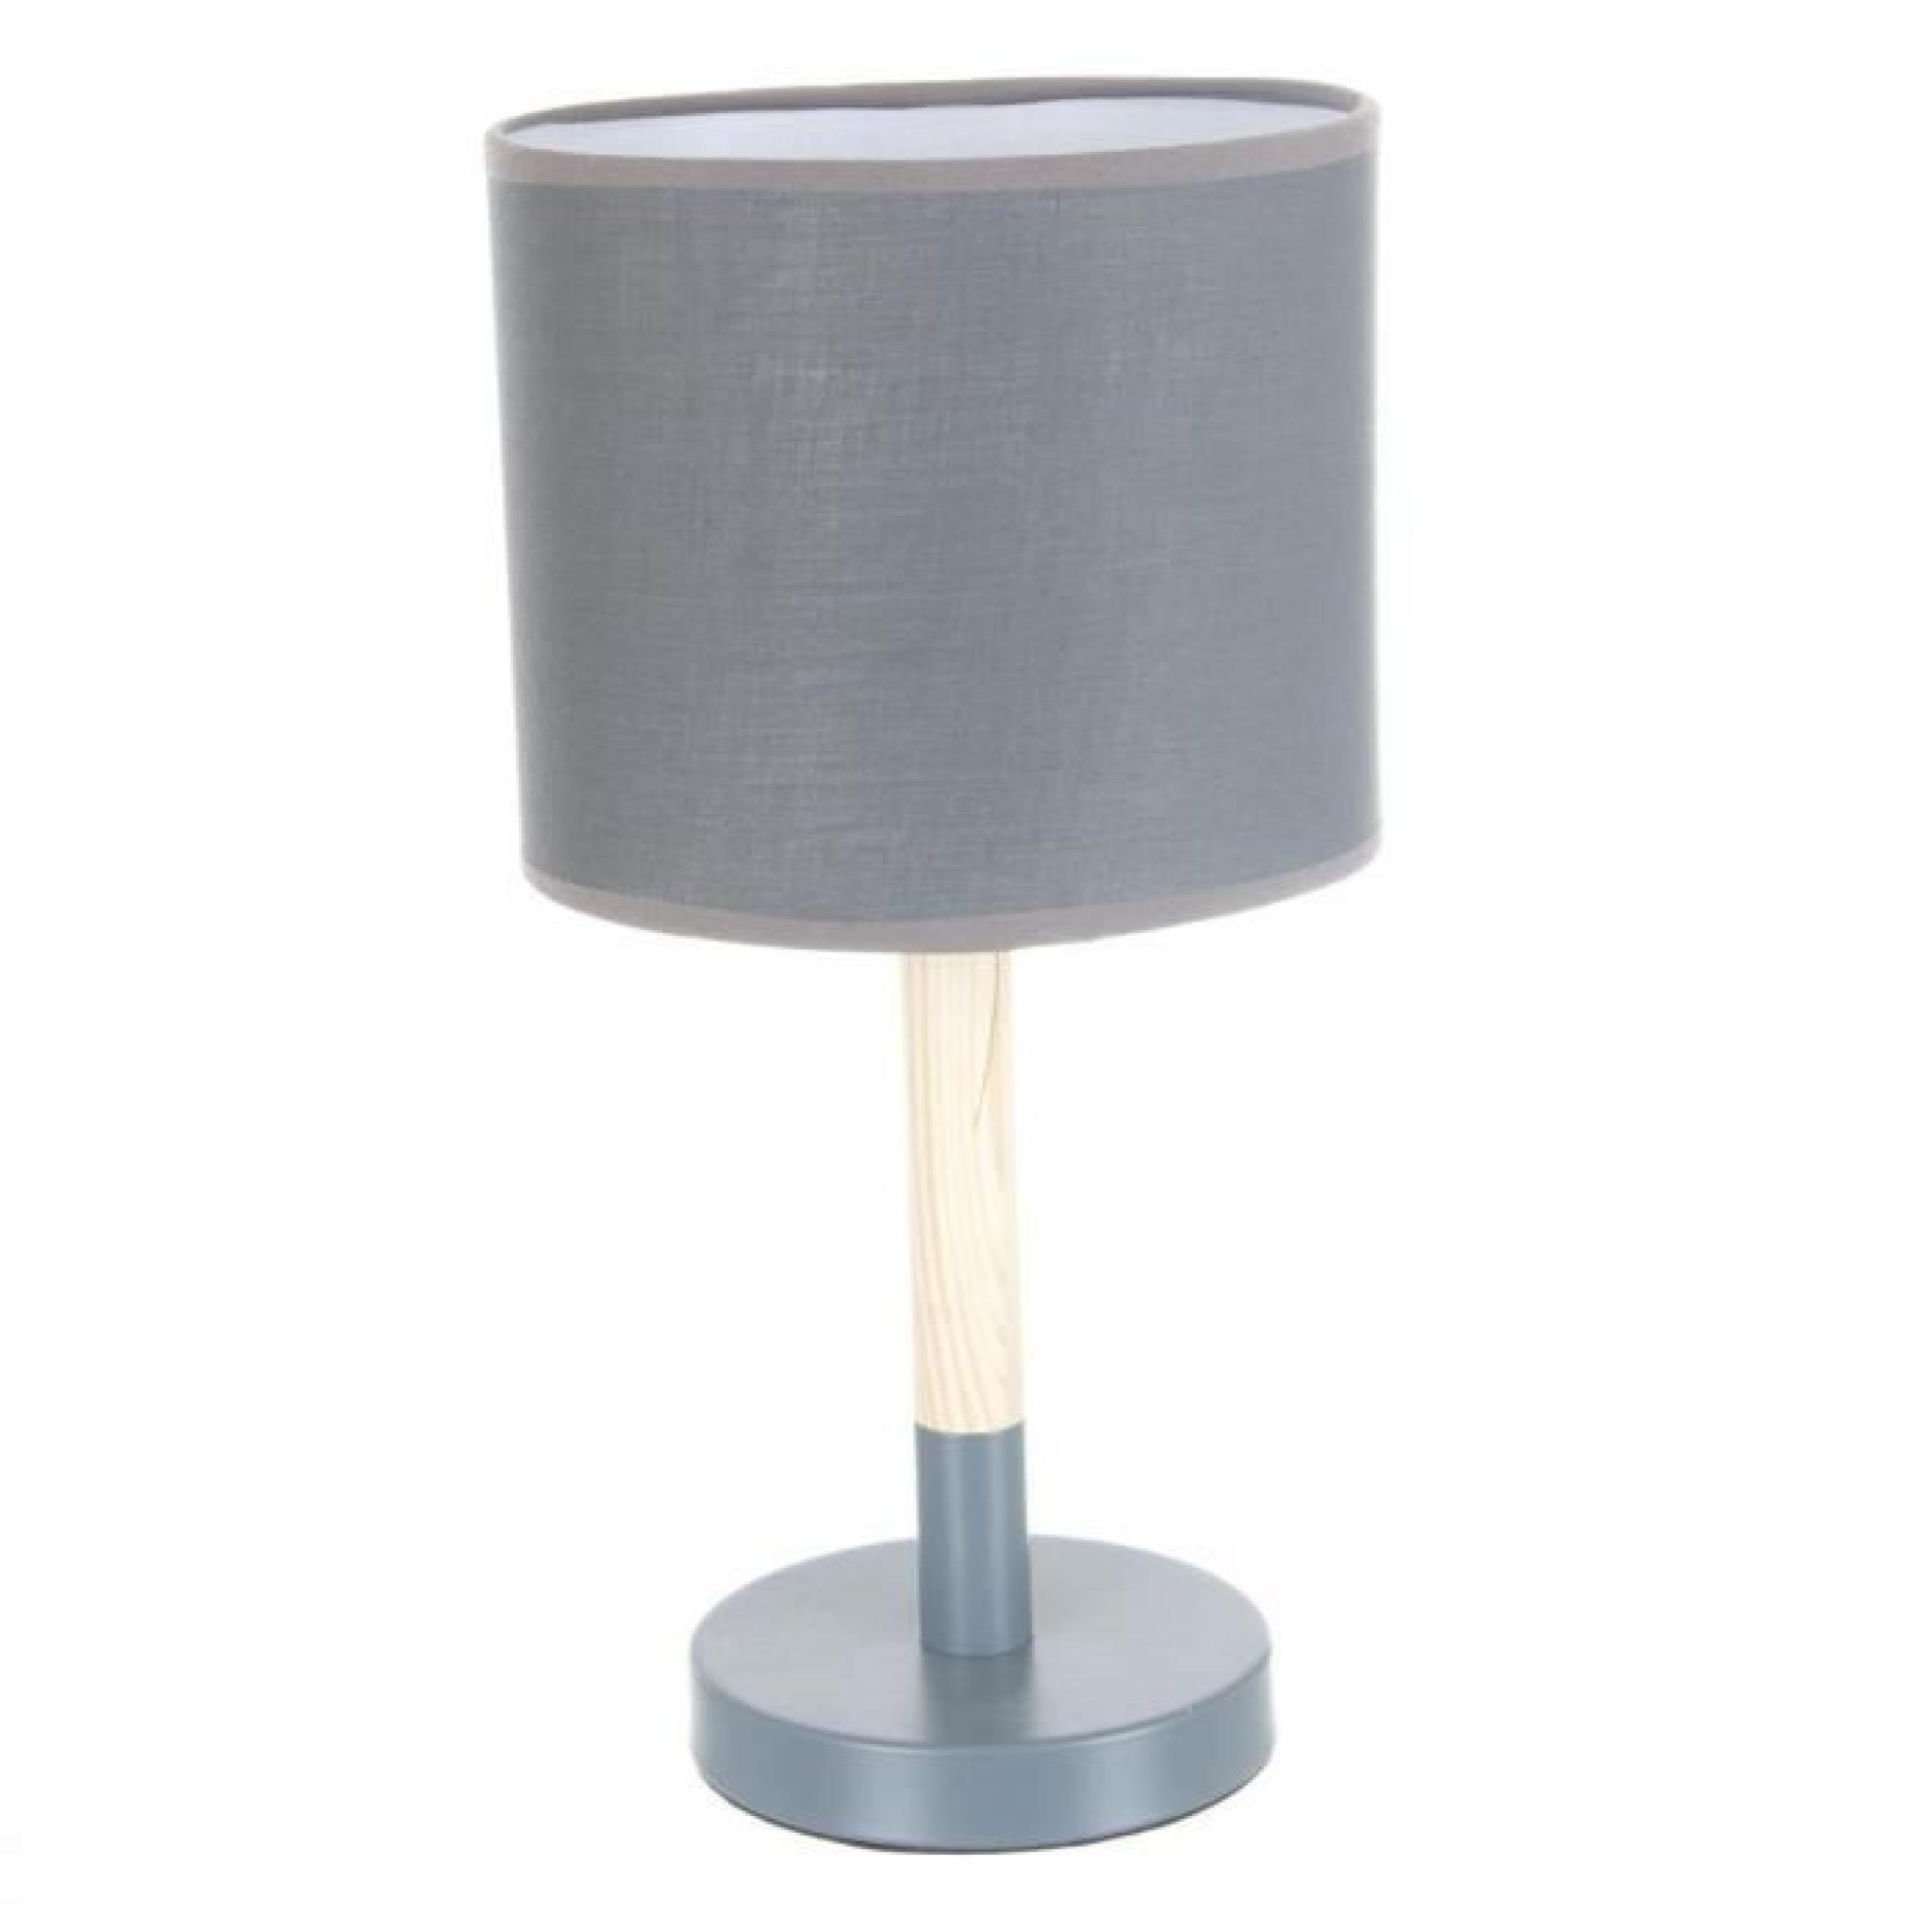 Lampe à poser - Style scandinave - Pied en métal et bois - BLANC Cassé